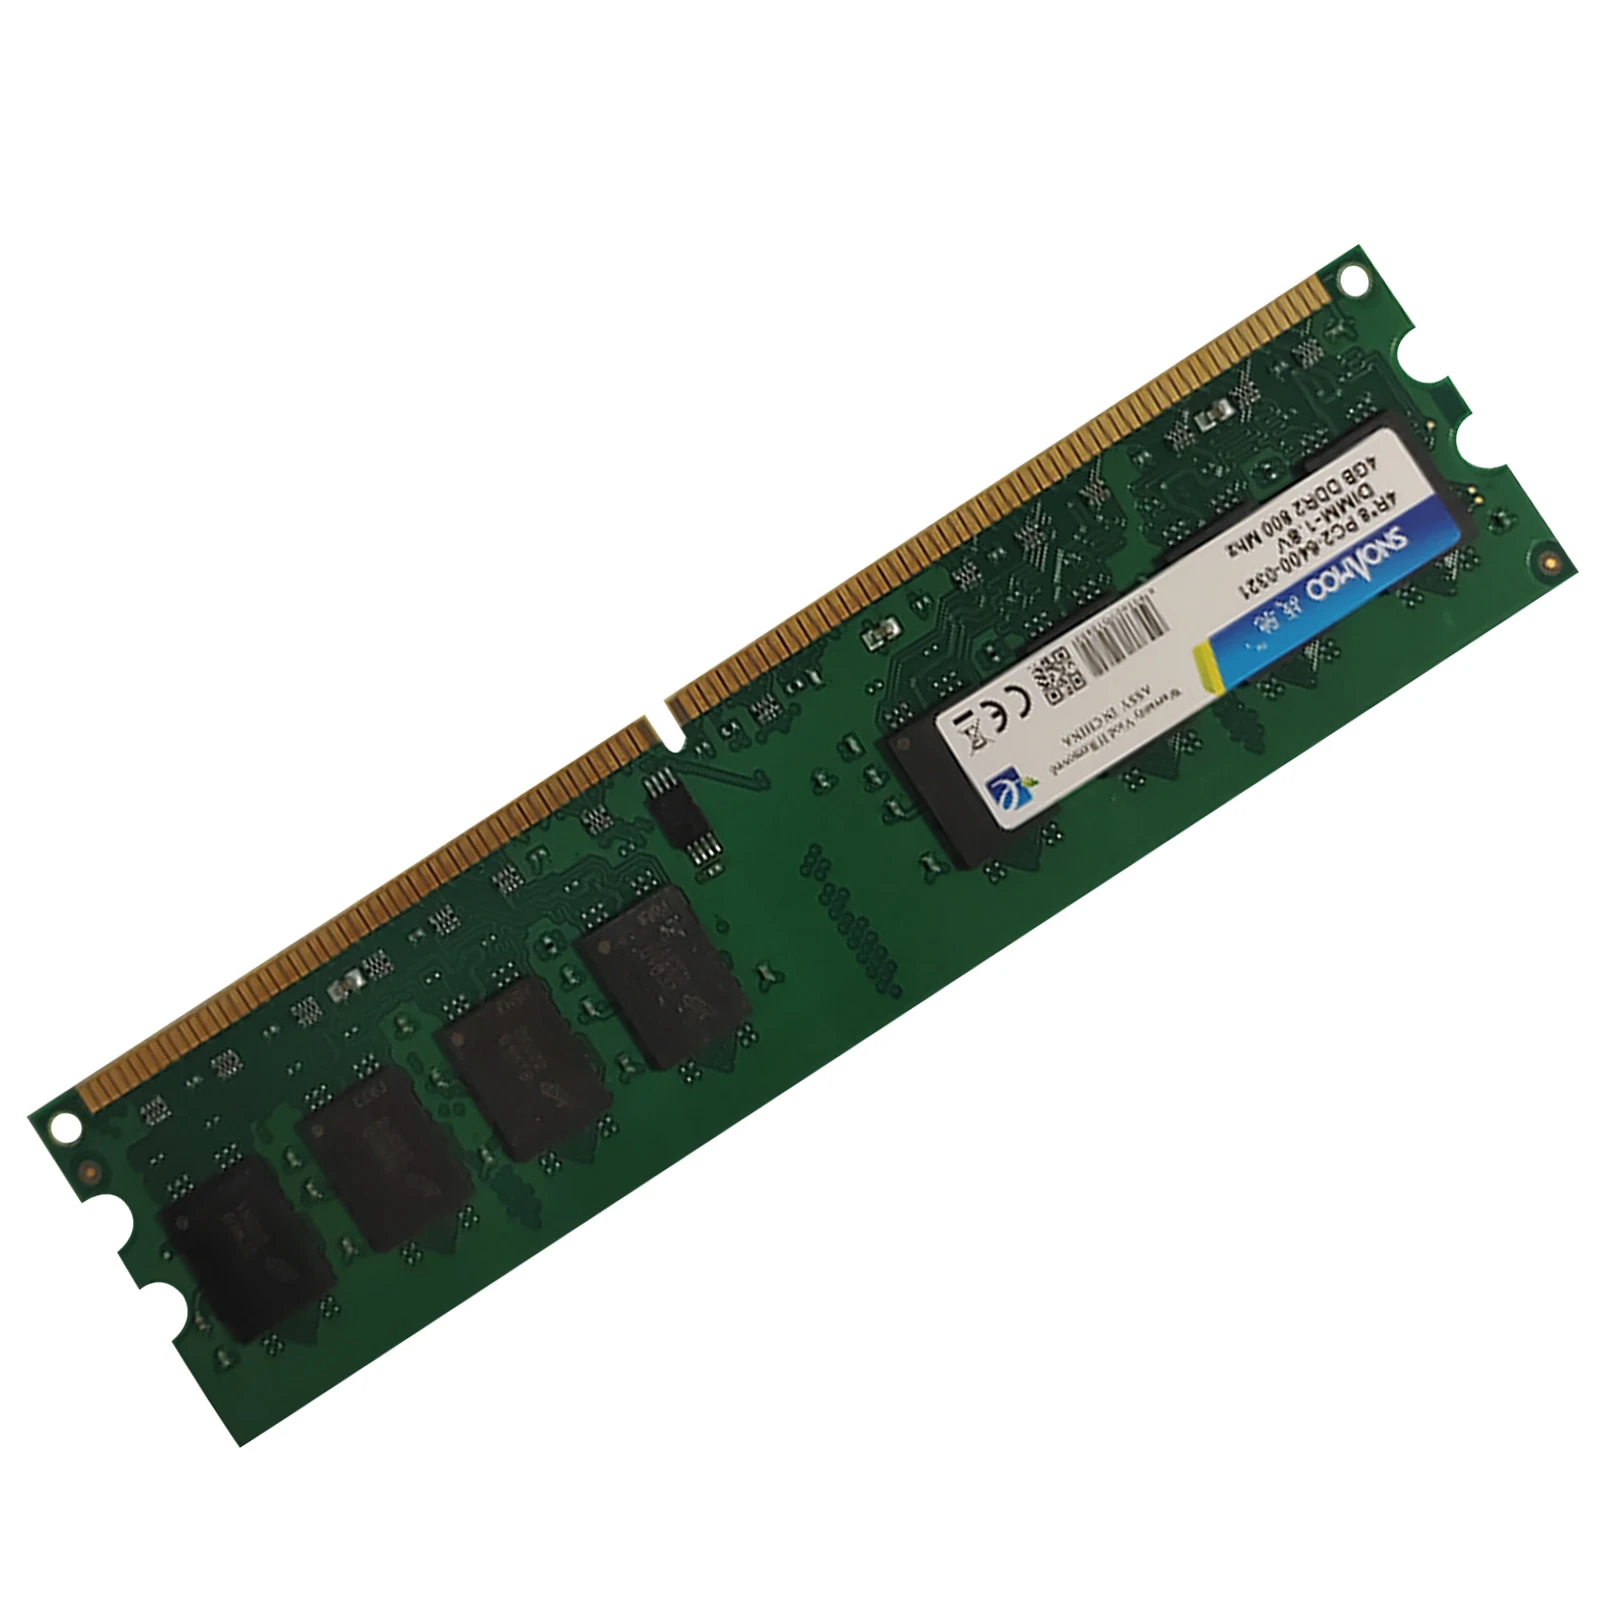 

Оперативная память DDR2 24 Pin 4 Гб большой емкости 800 МГц DDR2 модуль памяти для настольного компьютера